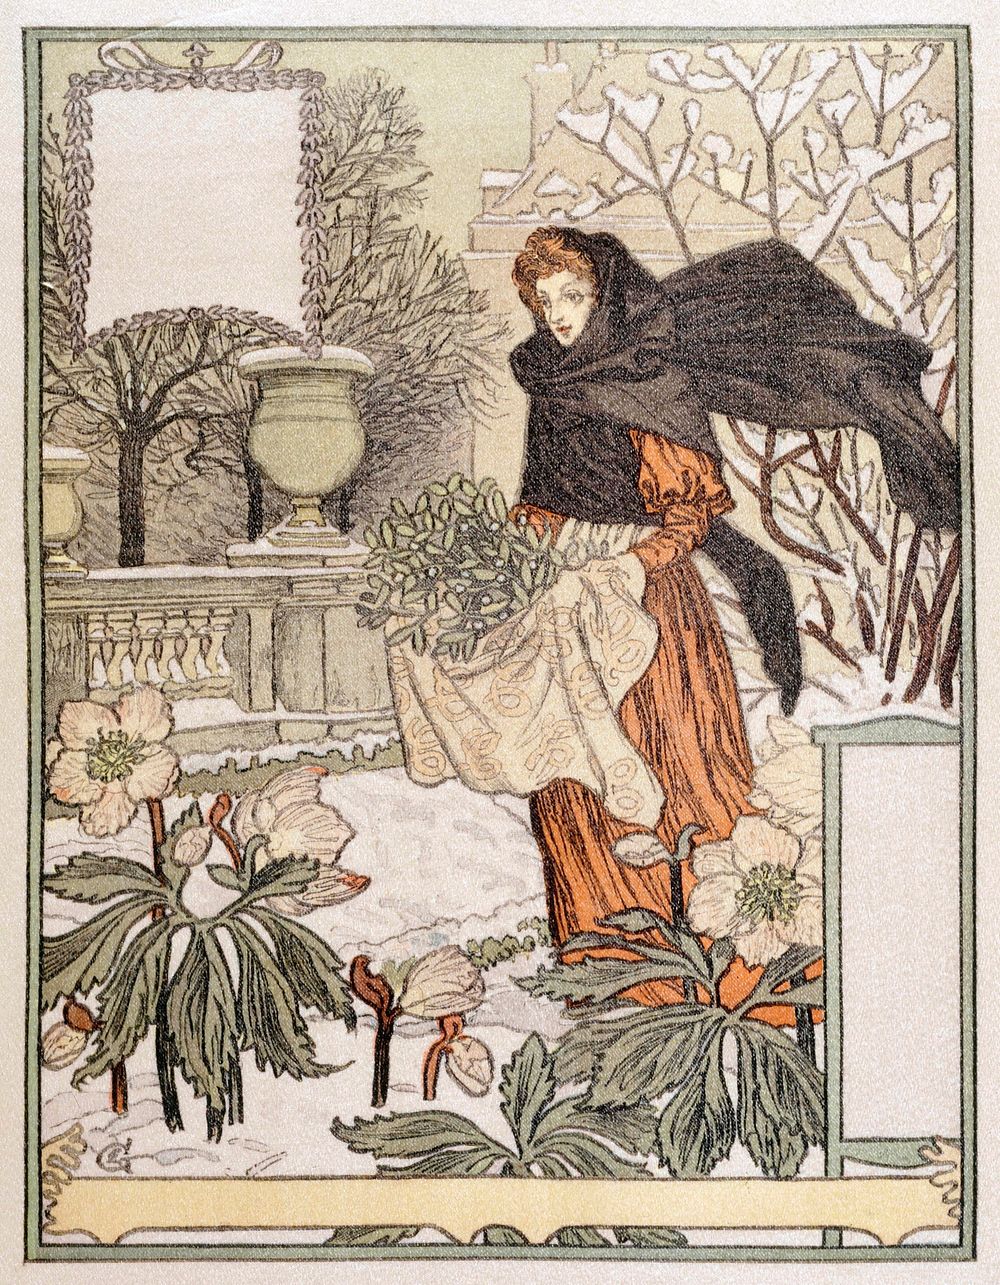 All&eacute;gorie du mois de d&eacute;cembre (1845-1917) by Eug&egrave;ne Grasset. Original public domain image from The…